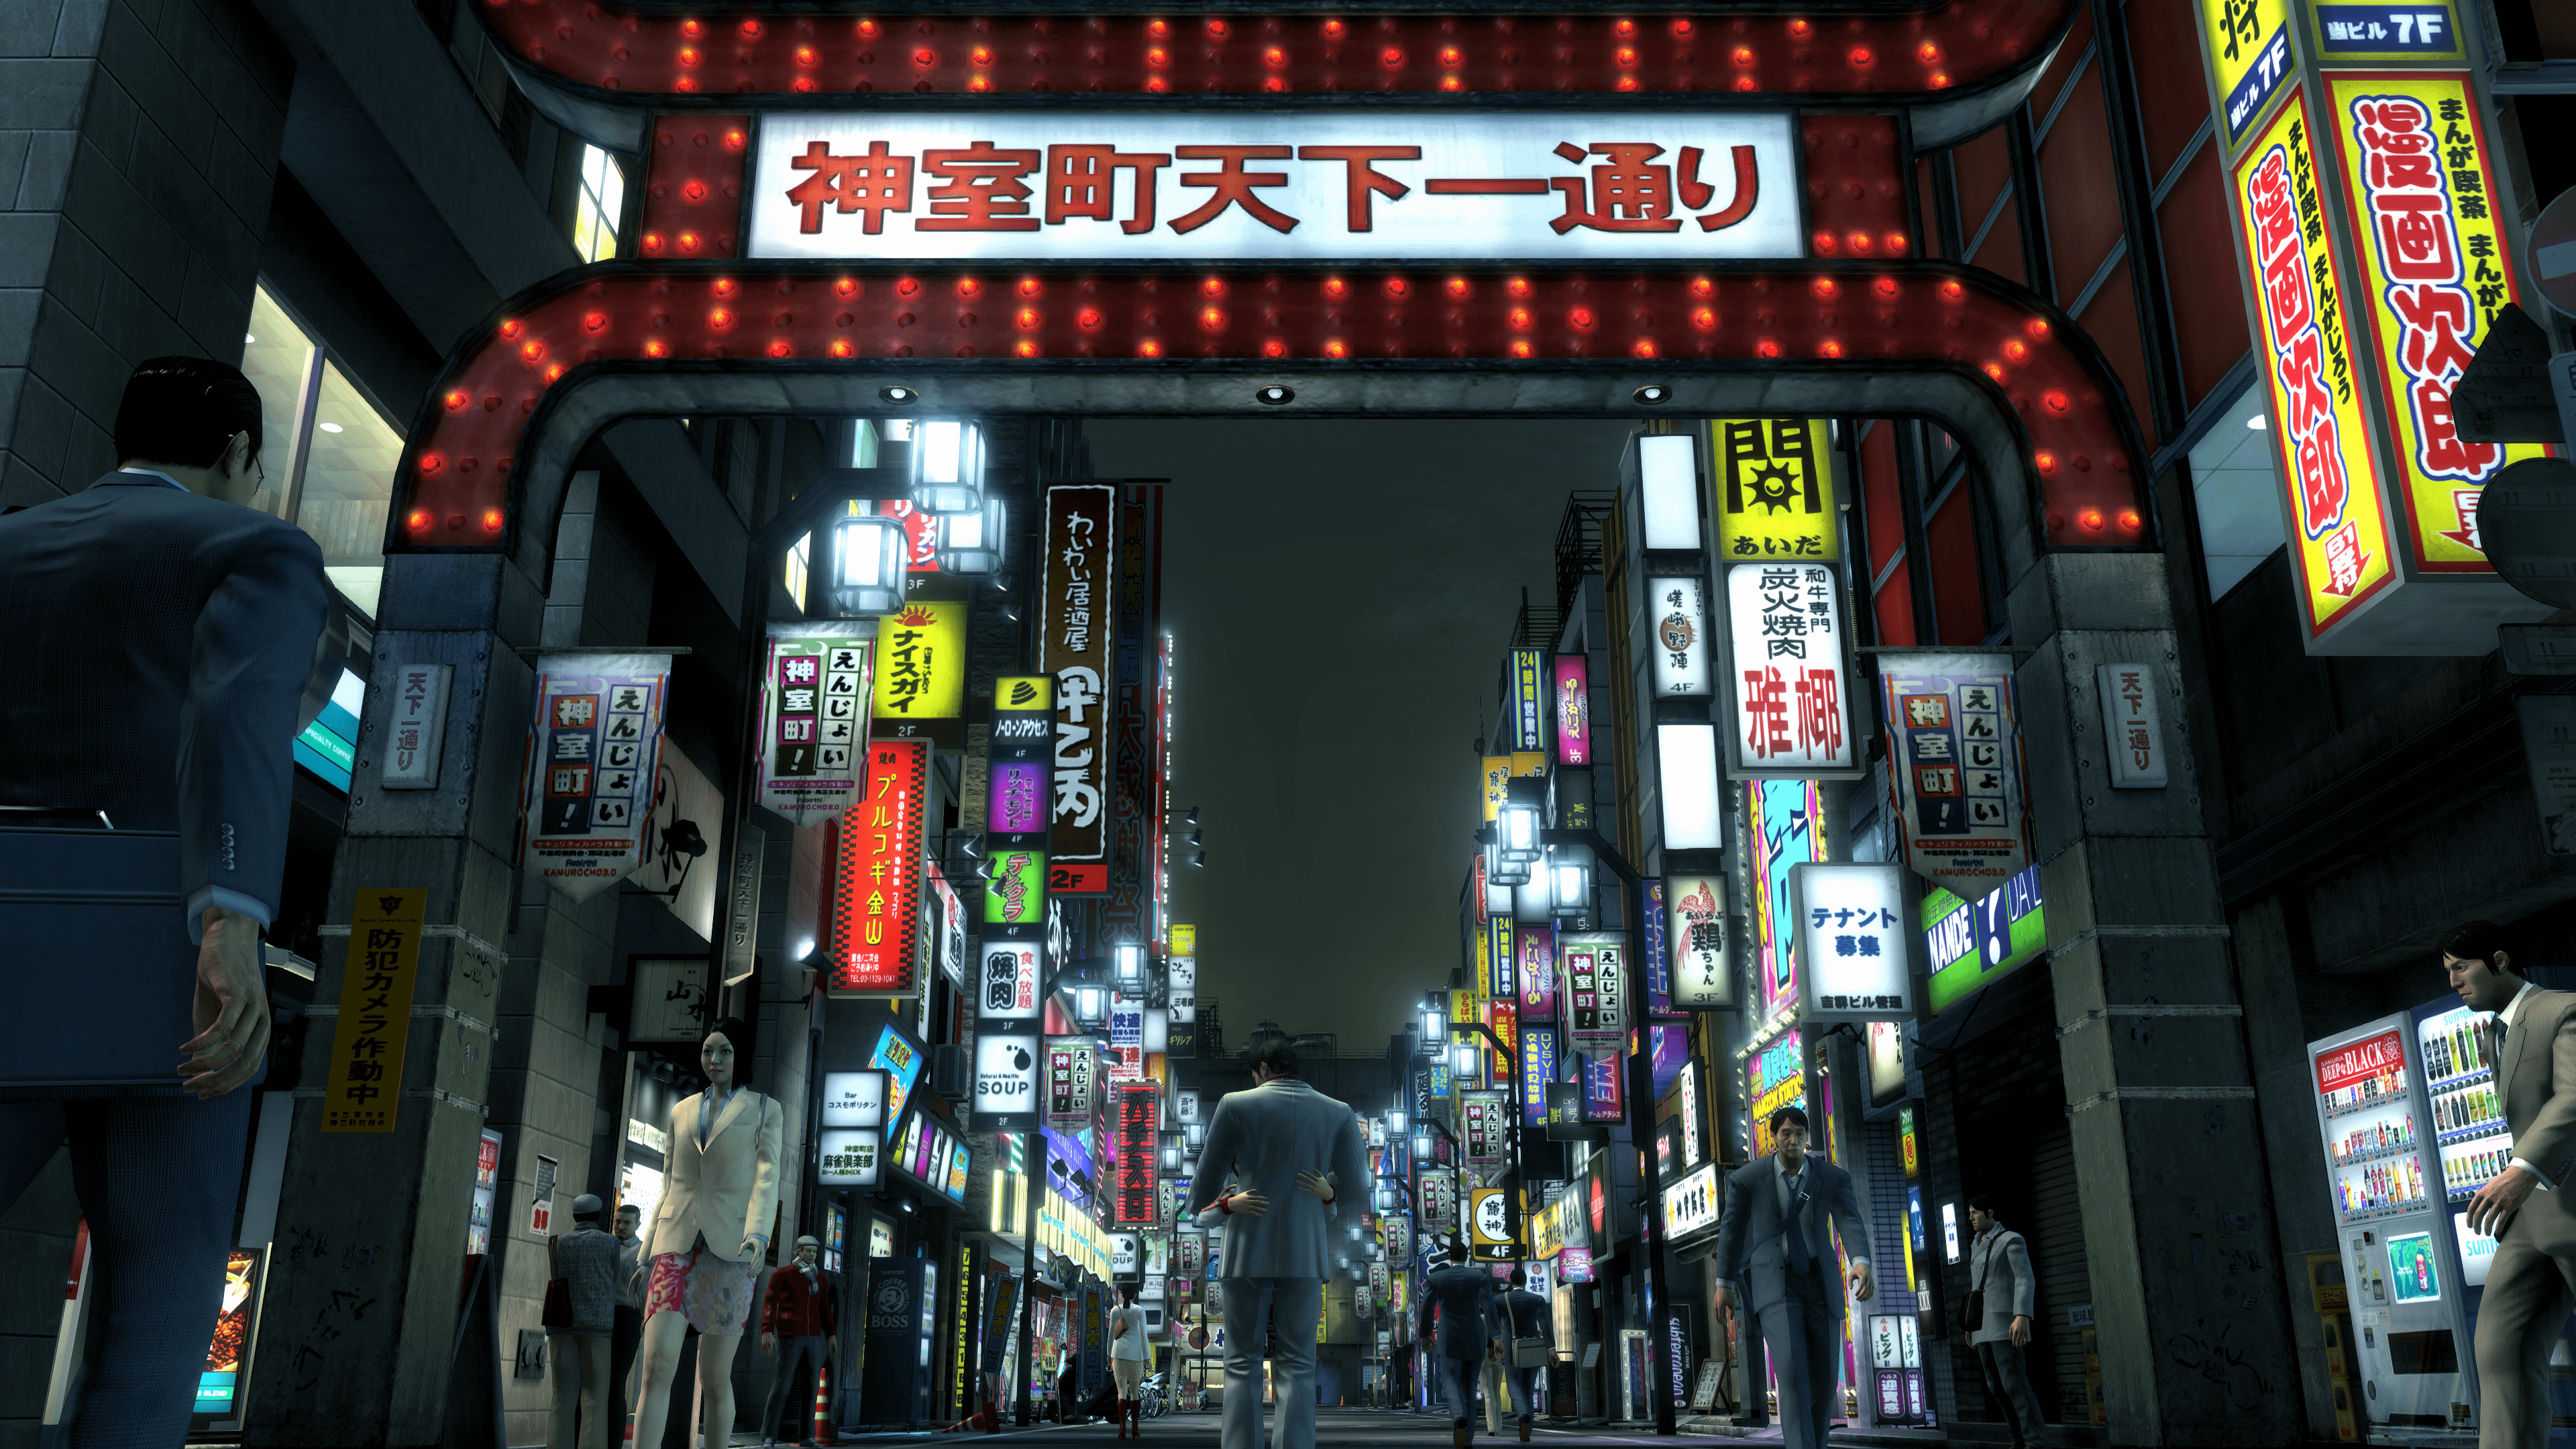 Yakuza 3 4K Wallpaper aka one of my fav screenshots of the game